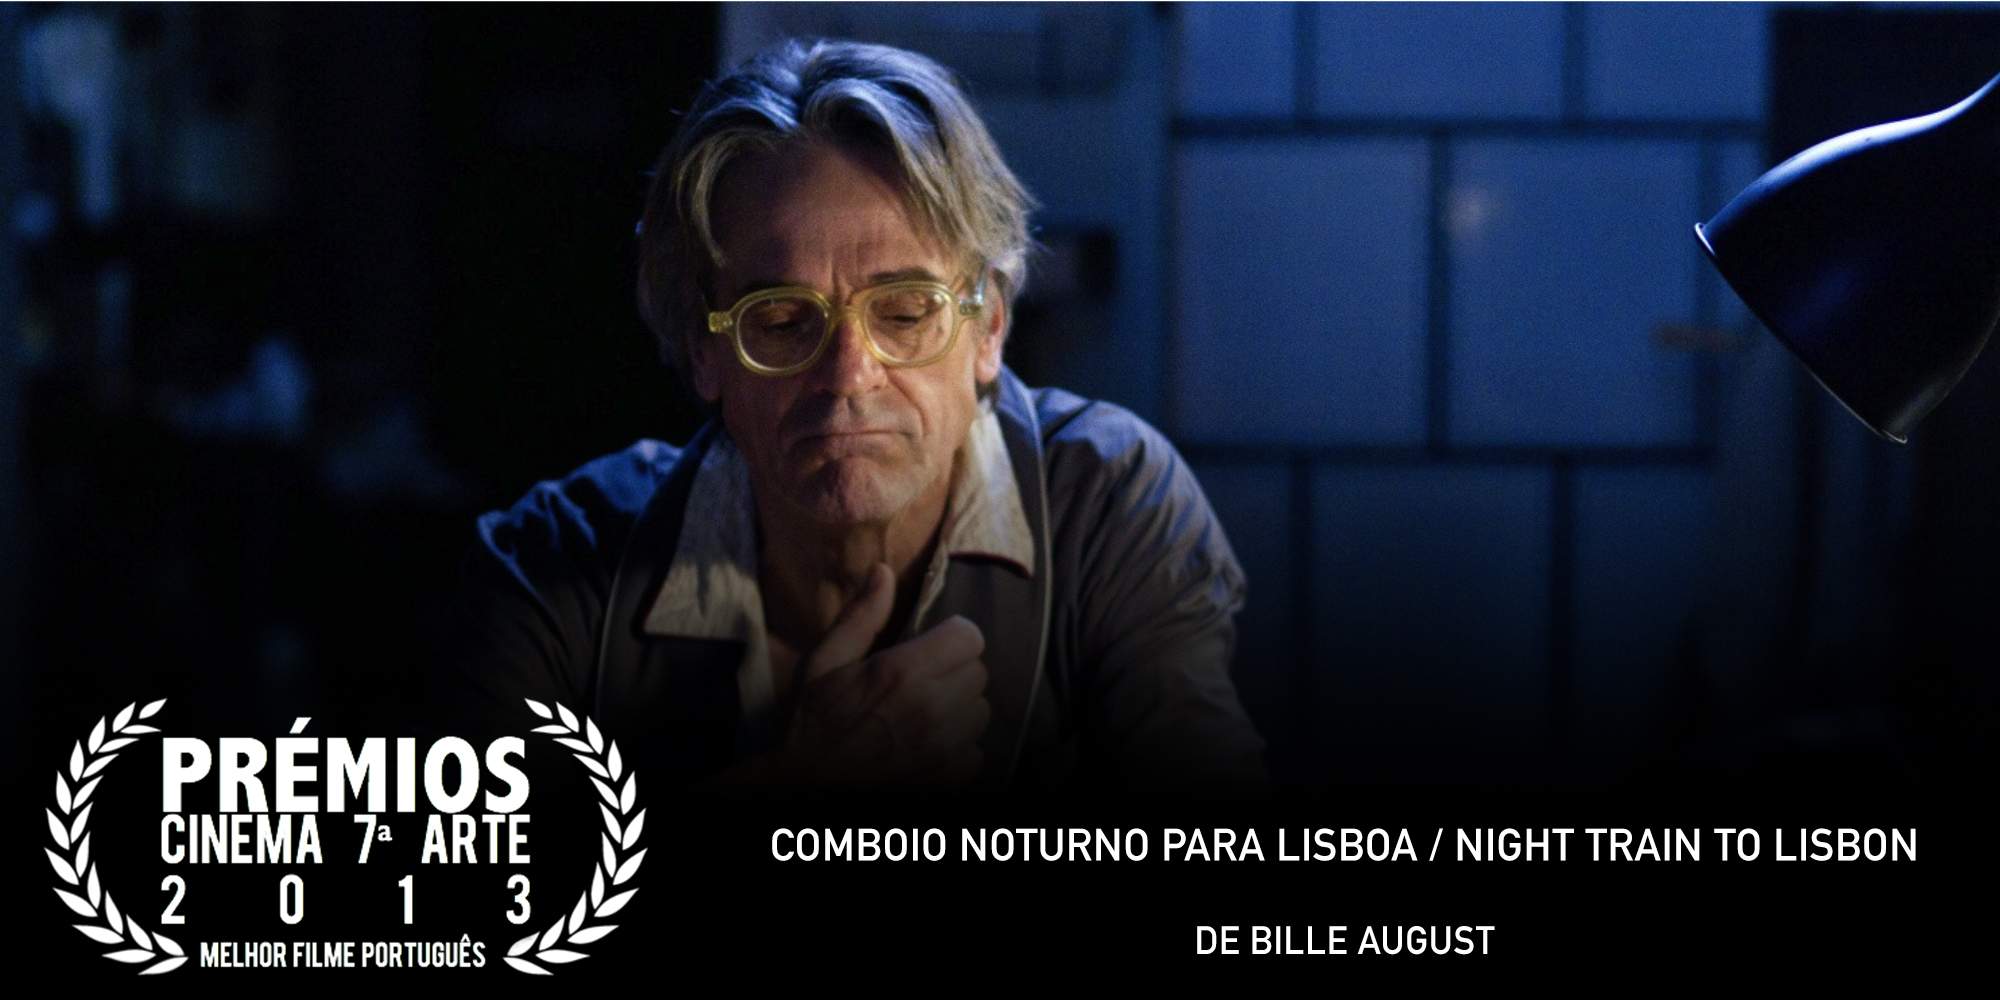 Premios C7A 2013 - Vencedor Melhor Filme Portugues